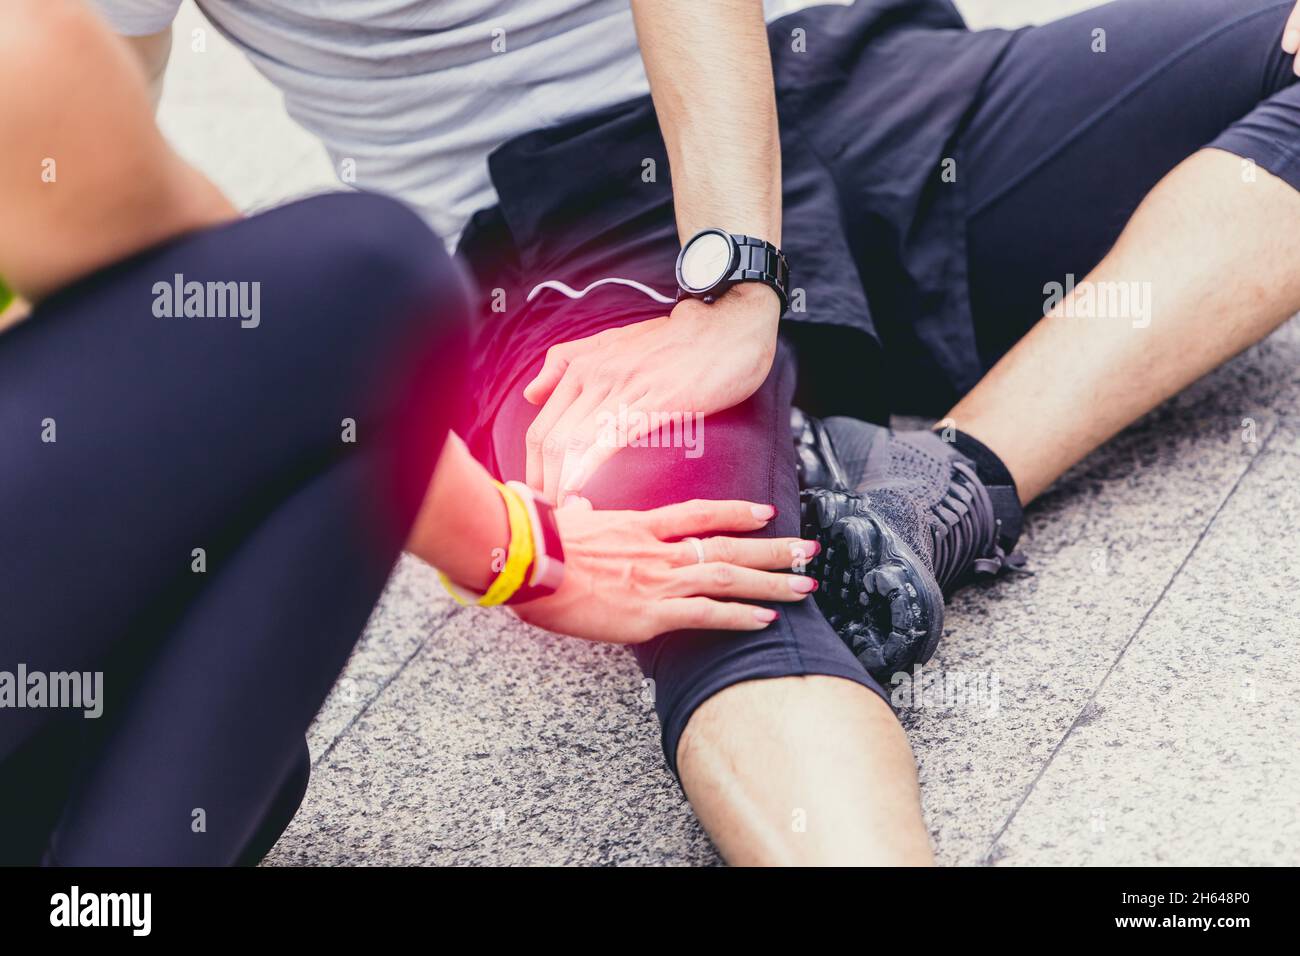 gli atleti sportivi hanno subito lesioni al ginocchio dovute a piegature o torsioni durante l'allenamento o la corsa Foto Stock